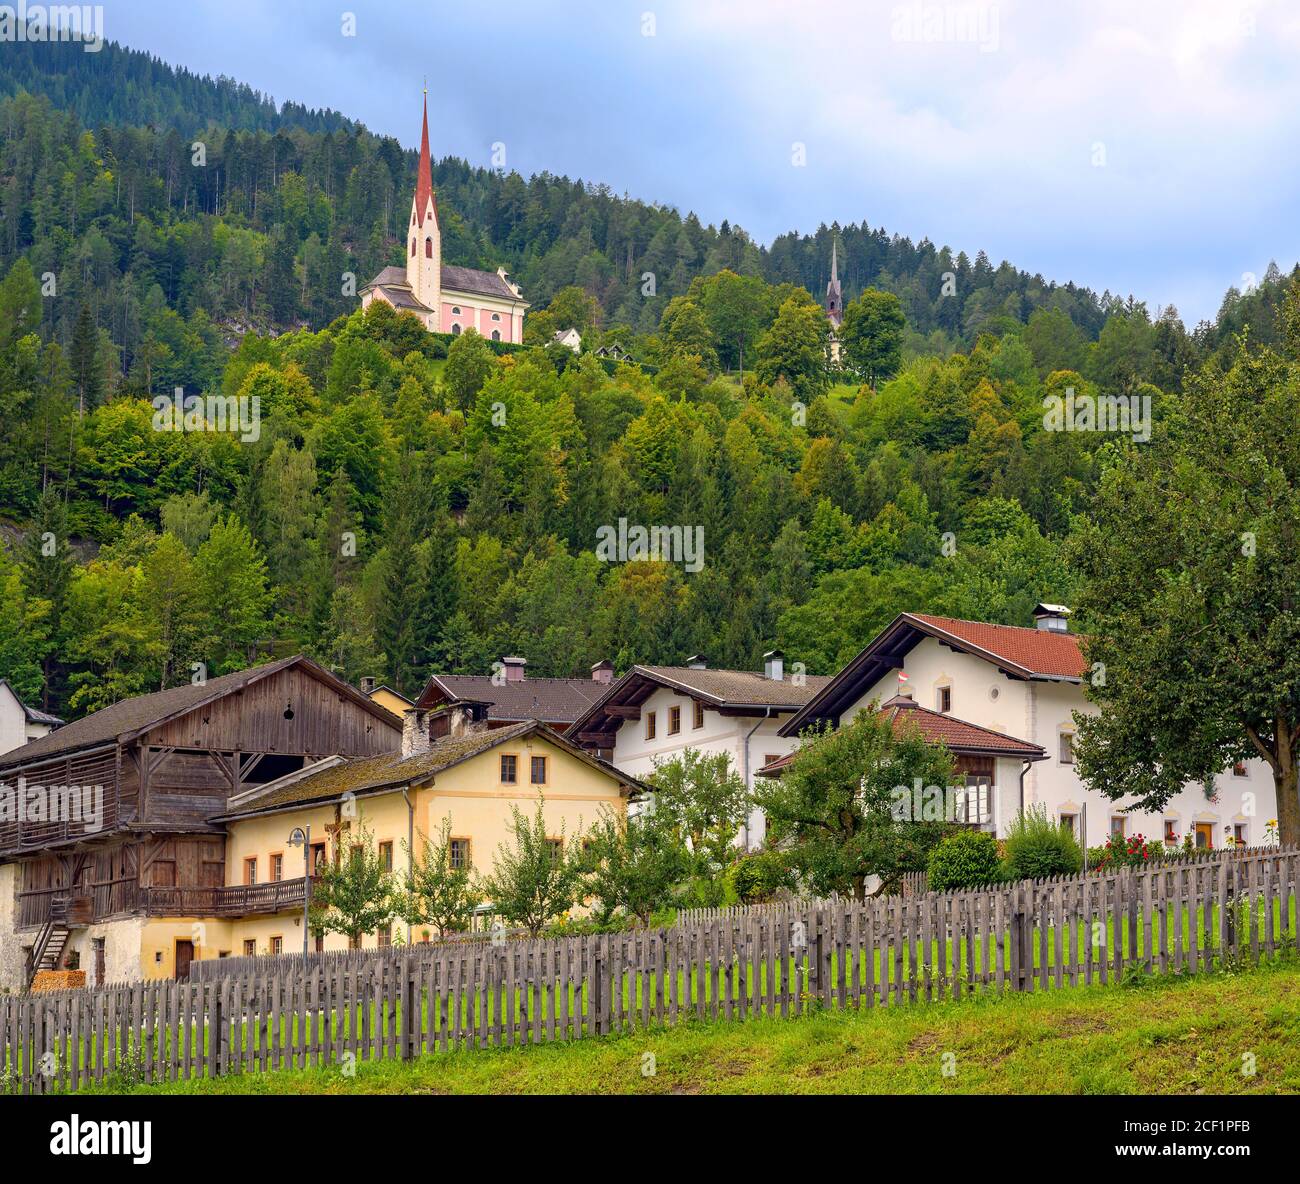 Lavant, ein Landdorf in der Nähe von Lienz in Osttirol mit der Kirche St. Ulrich auf dem Kirchbichl, Österreich Stockfoto